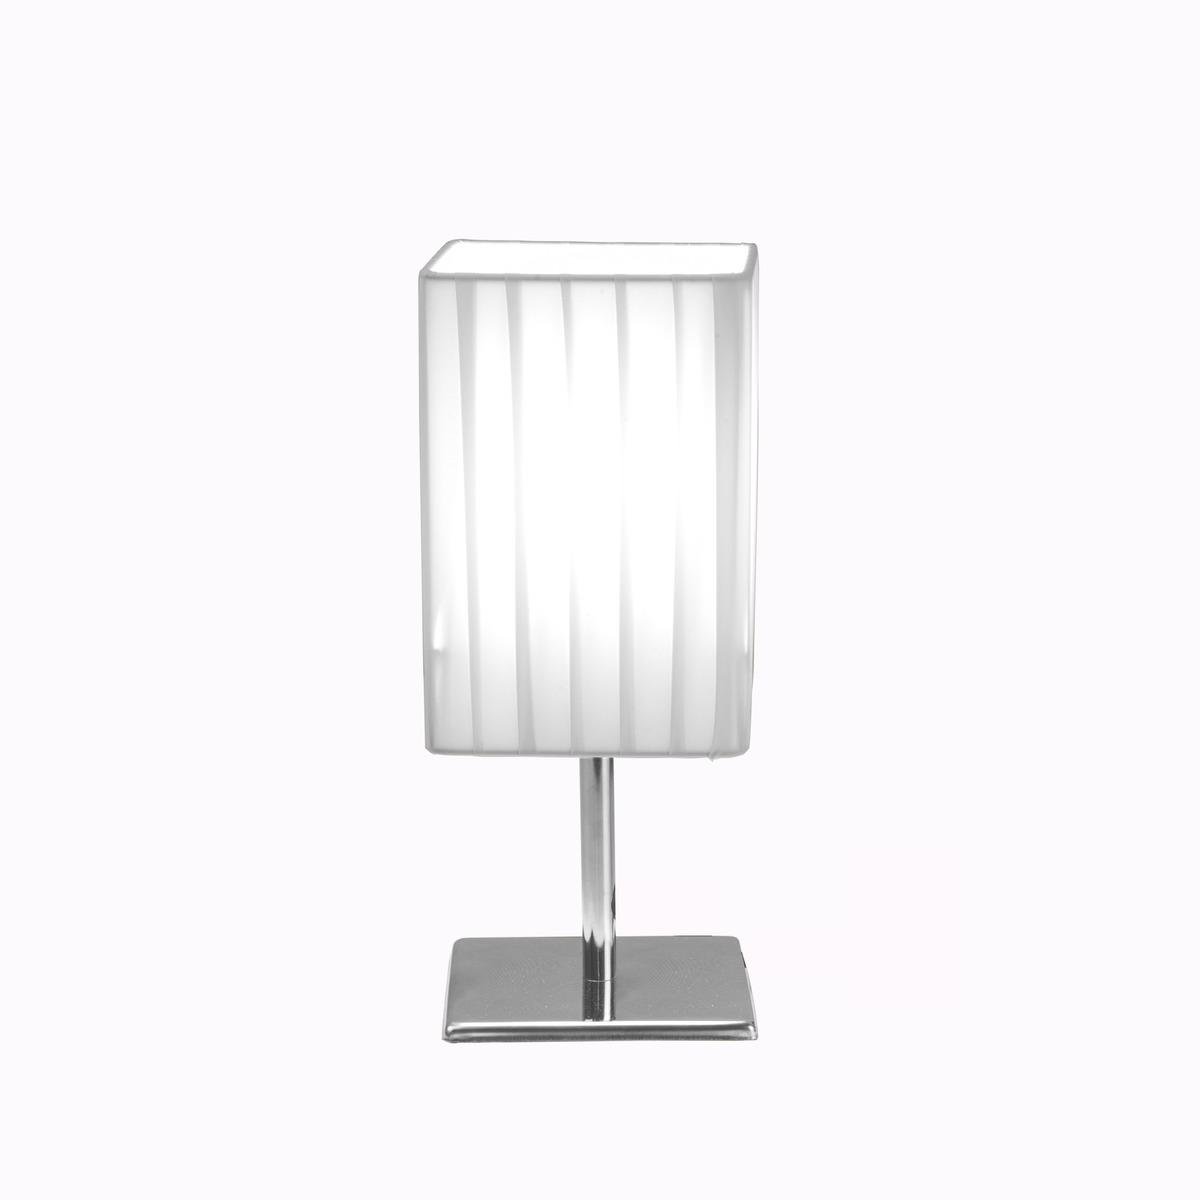 Lampe à poser avec abat-jour plissé carré - 10 x 10 x H 25 cm - Blanc, Gris